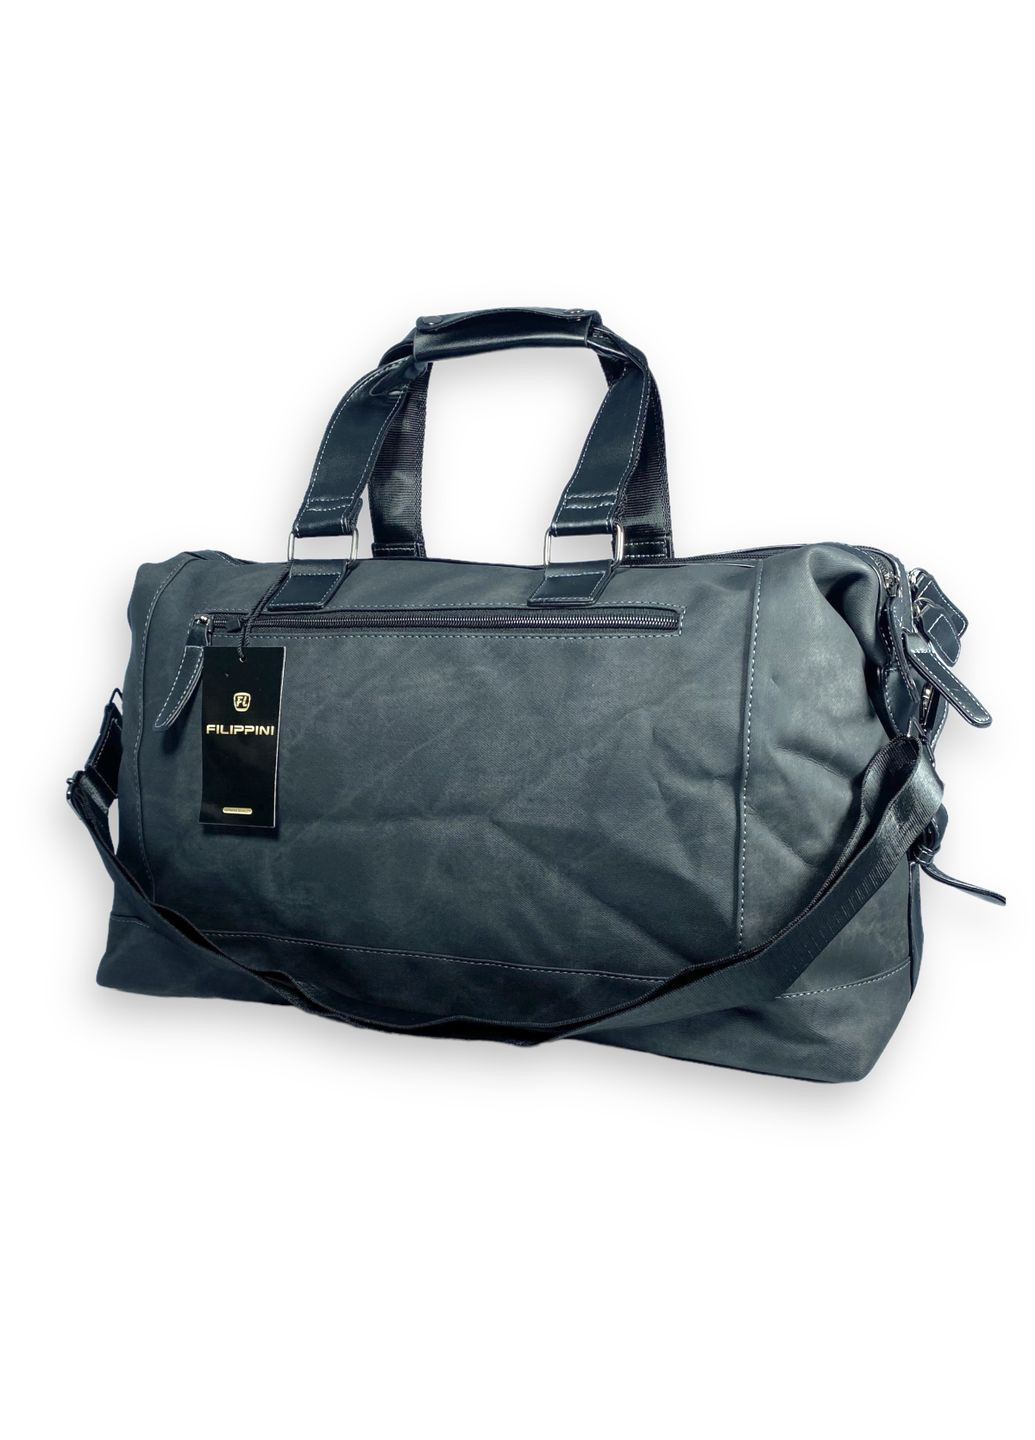 Дорожная сумка из экокожи 2 отдела внутренние карманы съемный ремень размер: 50*30*20 см черная Filippini (285814818)